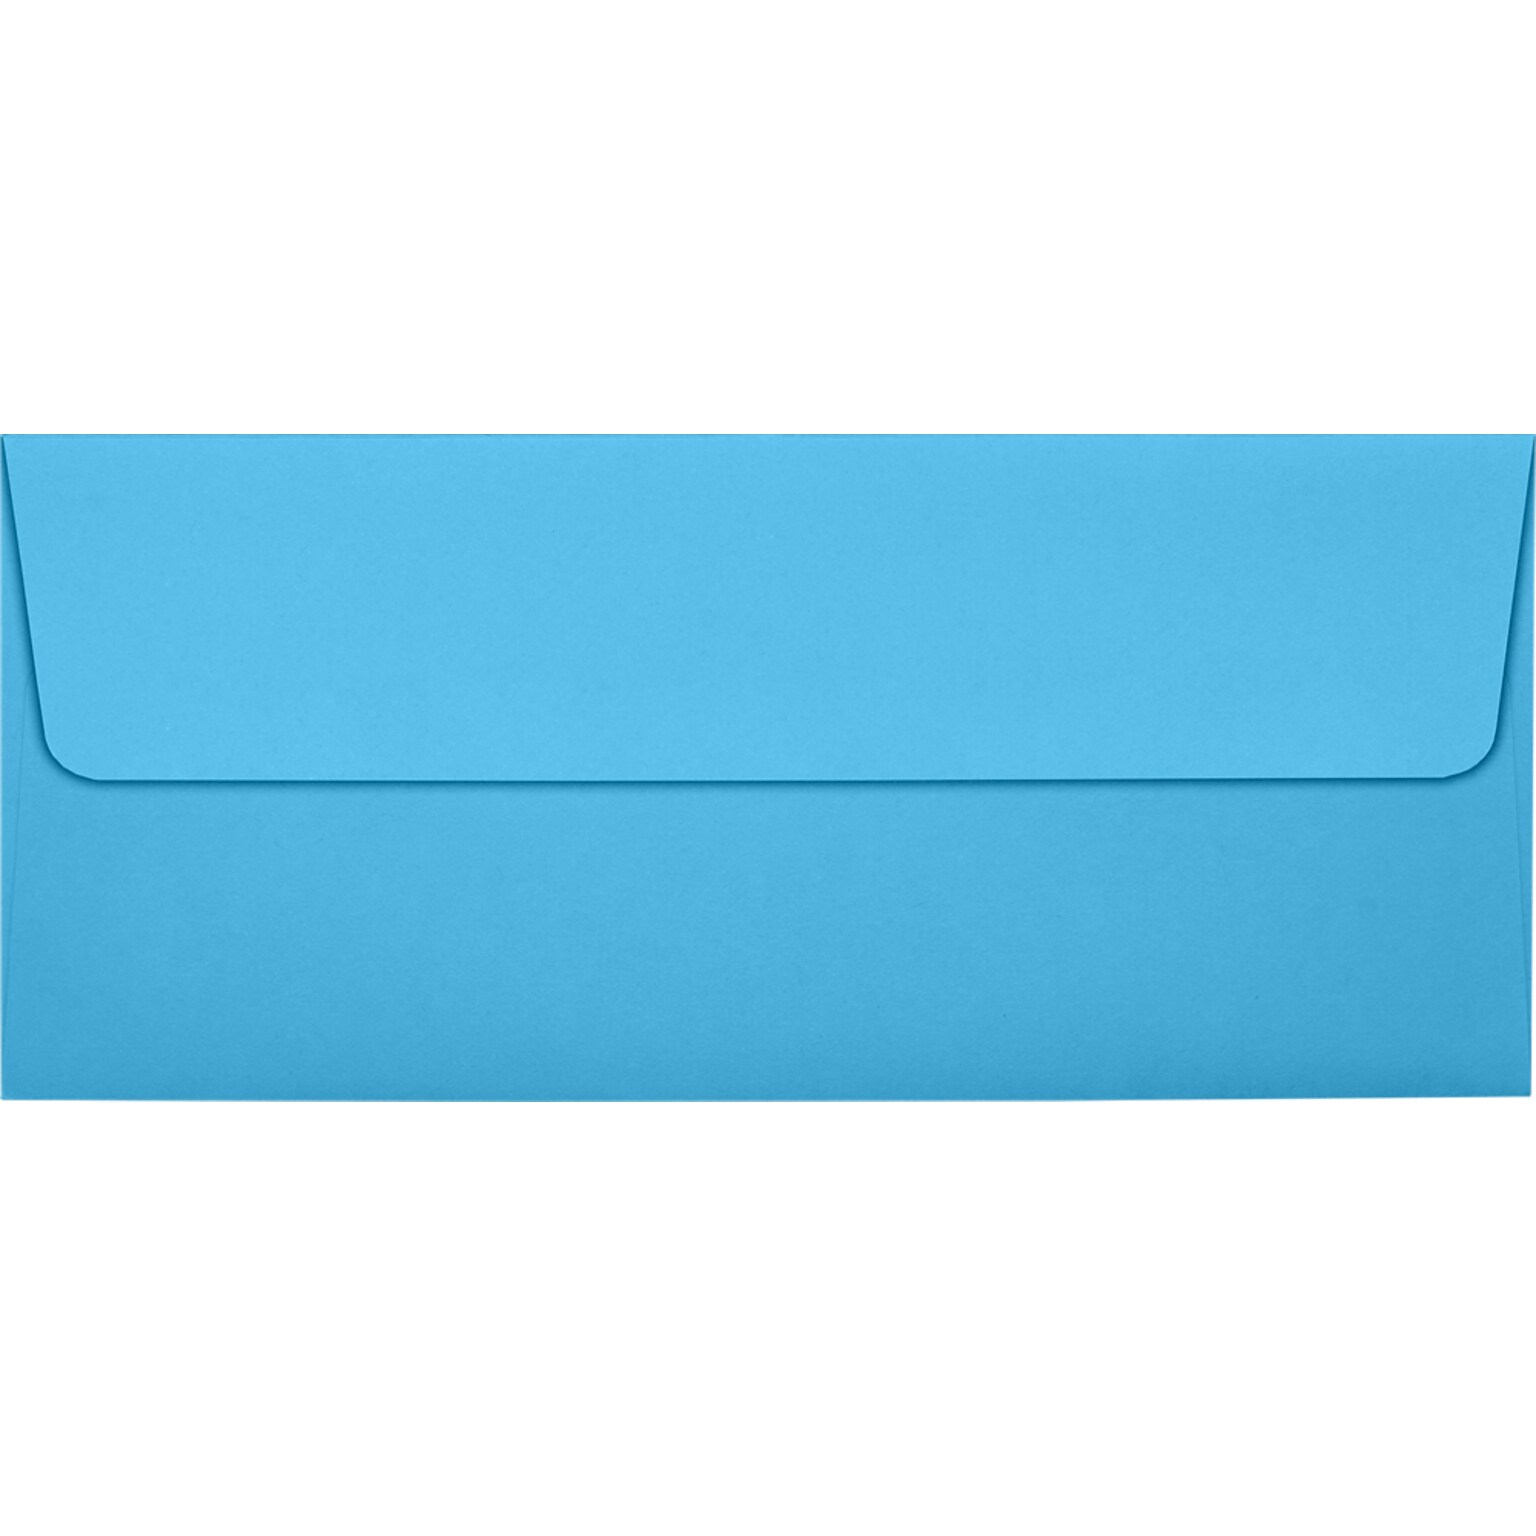 JAM Paper #10 Square Flap Envelopes, Peel & Press, 60lb, 4 1/8 x 9 1/2, Bright Blue, 250 Pack (5360-13-250)